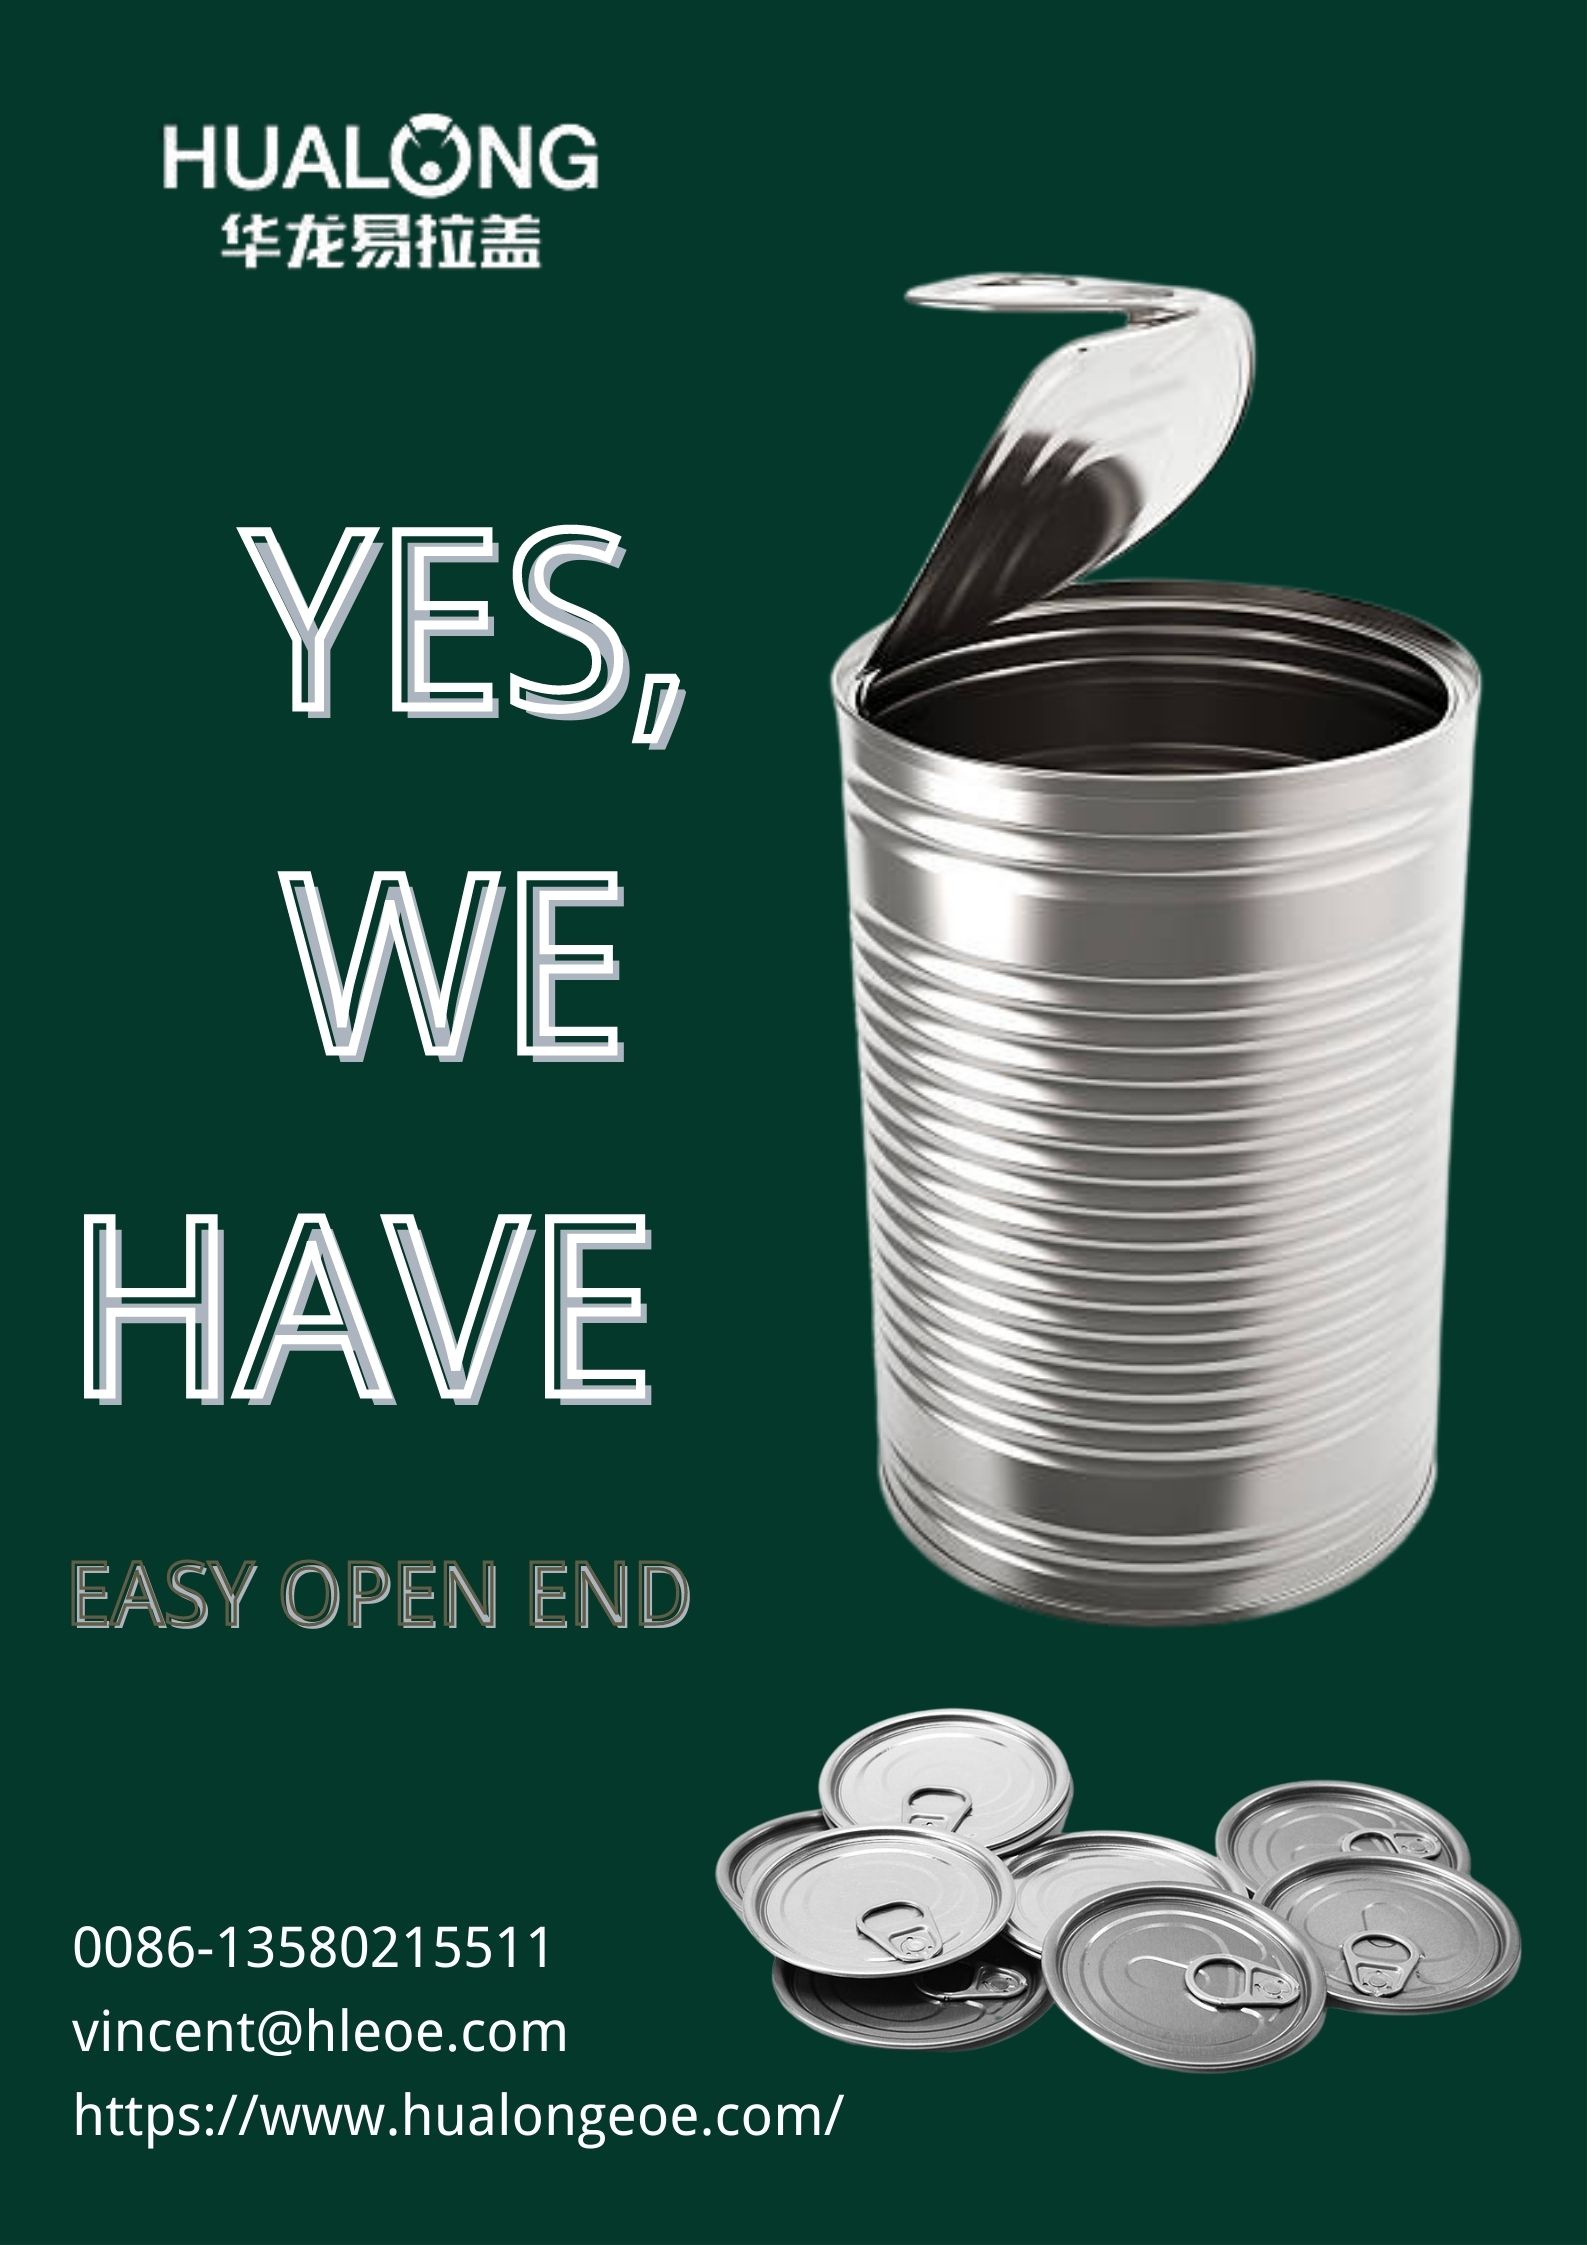 Hualong EOE: Jak správně recyklovat Easy Open End?